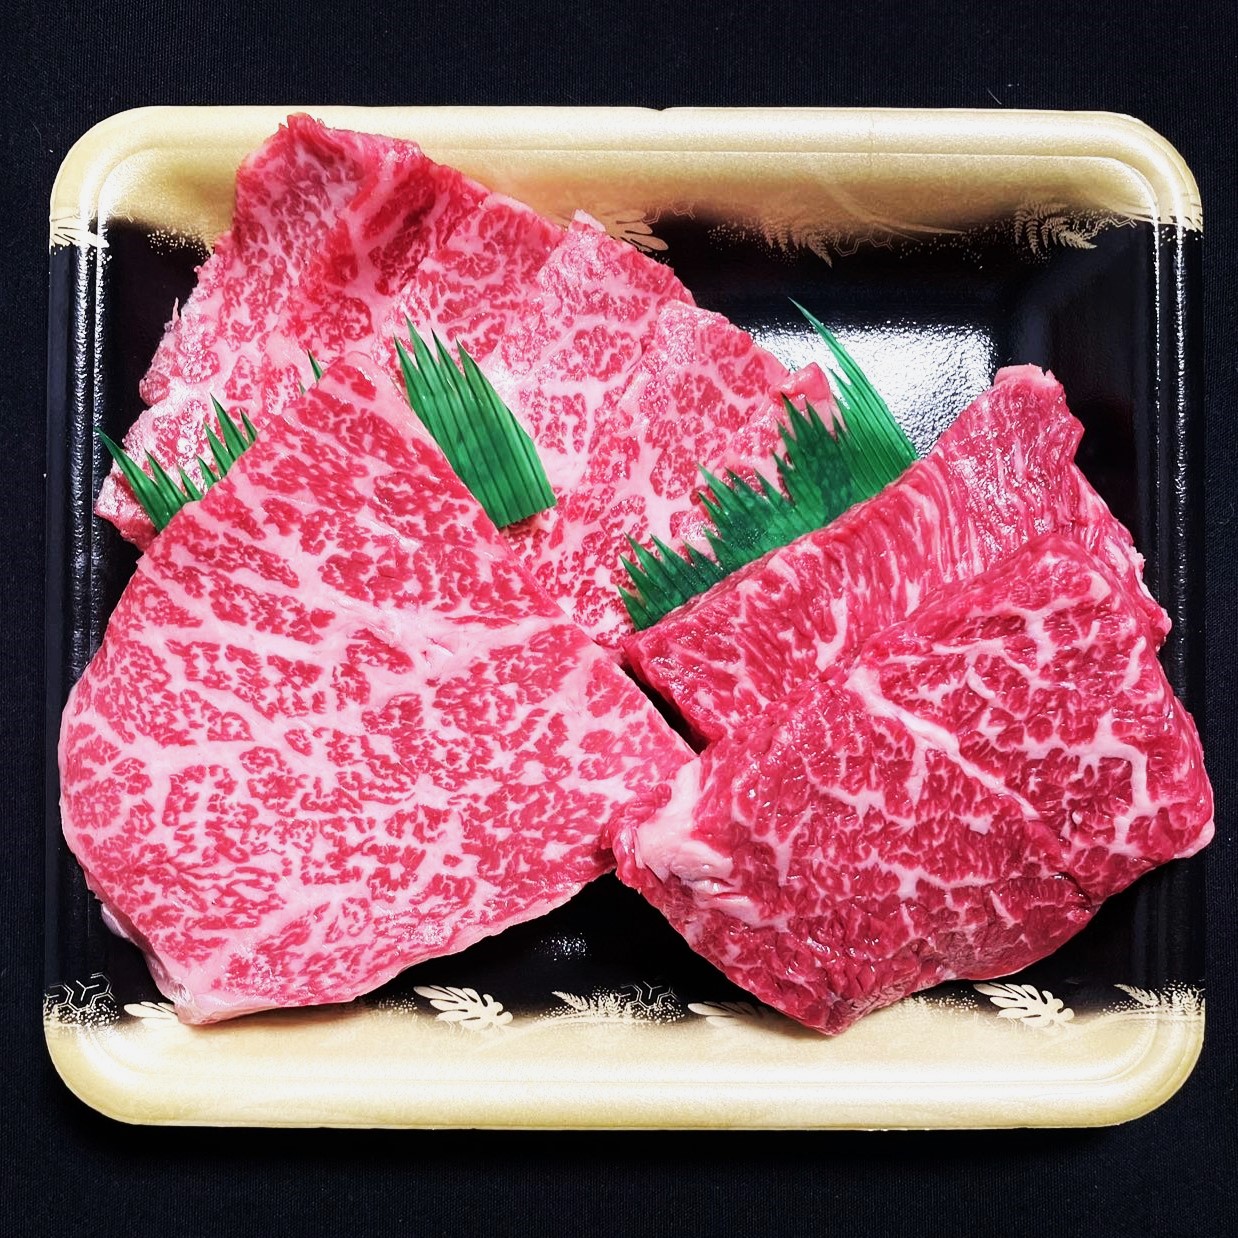 Japanese Wagyu Archives - Japanese Wagyu Beef Australia